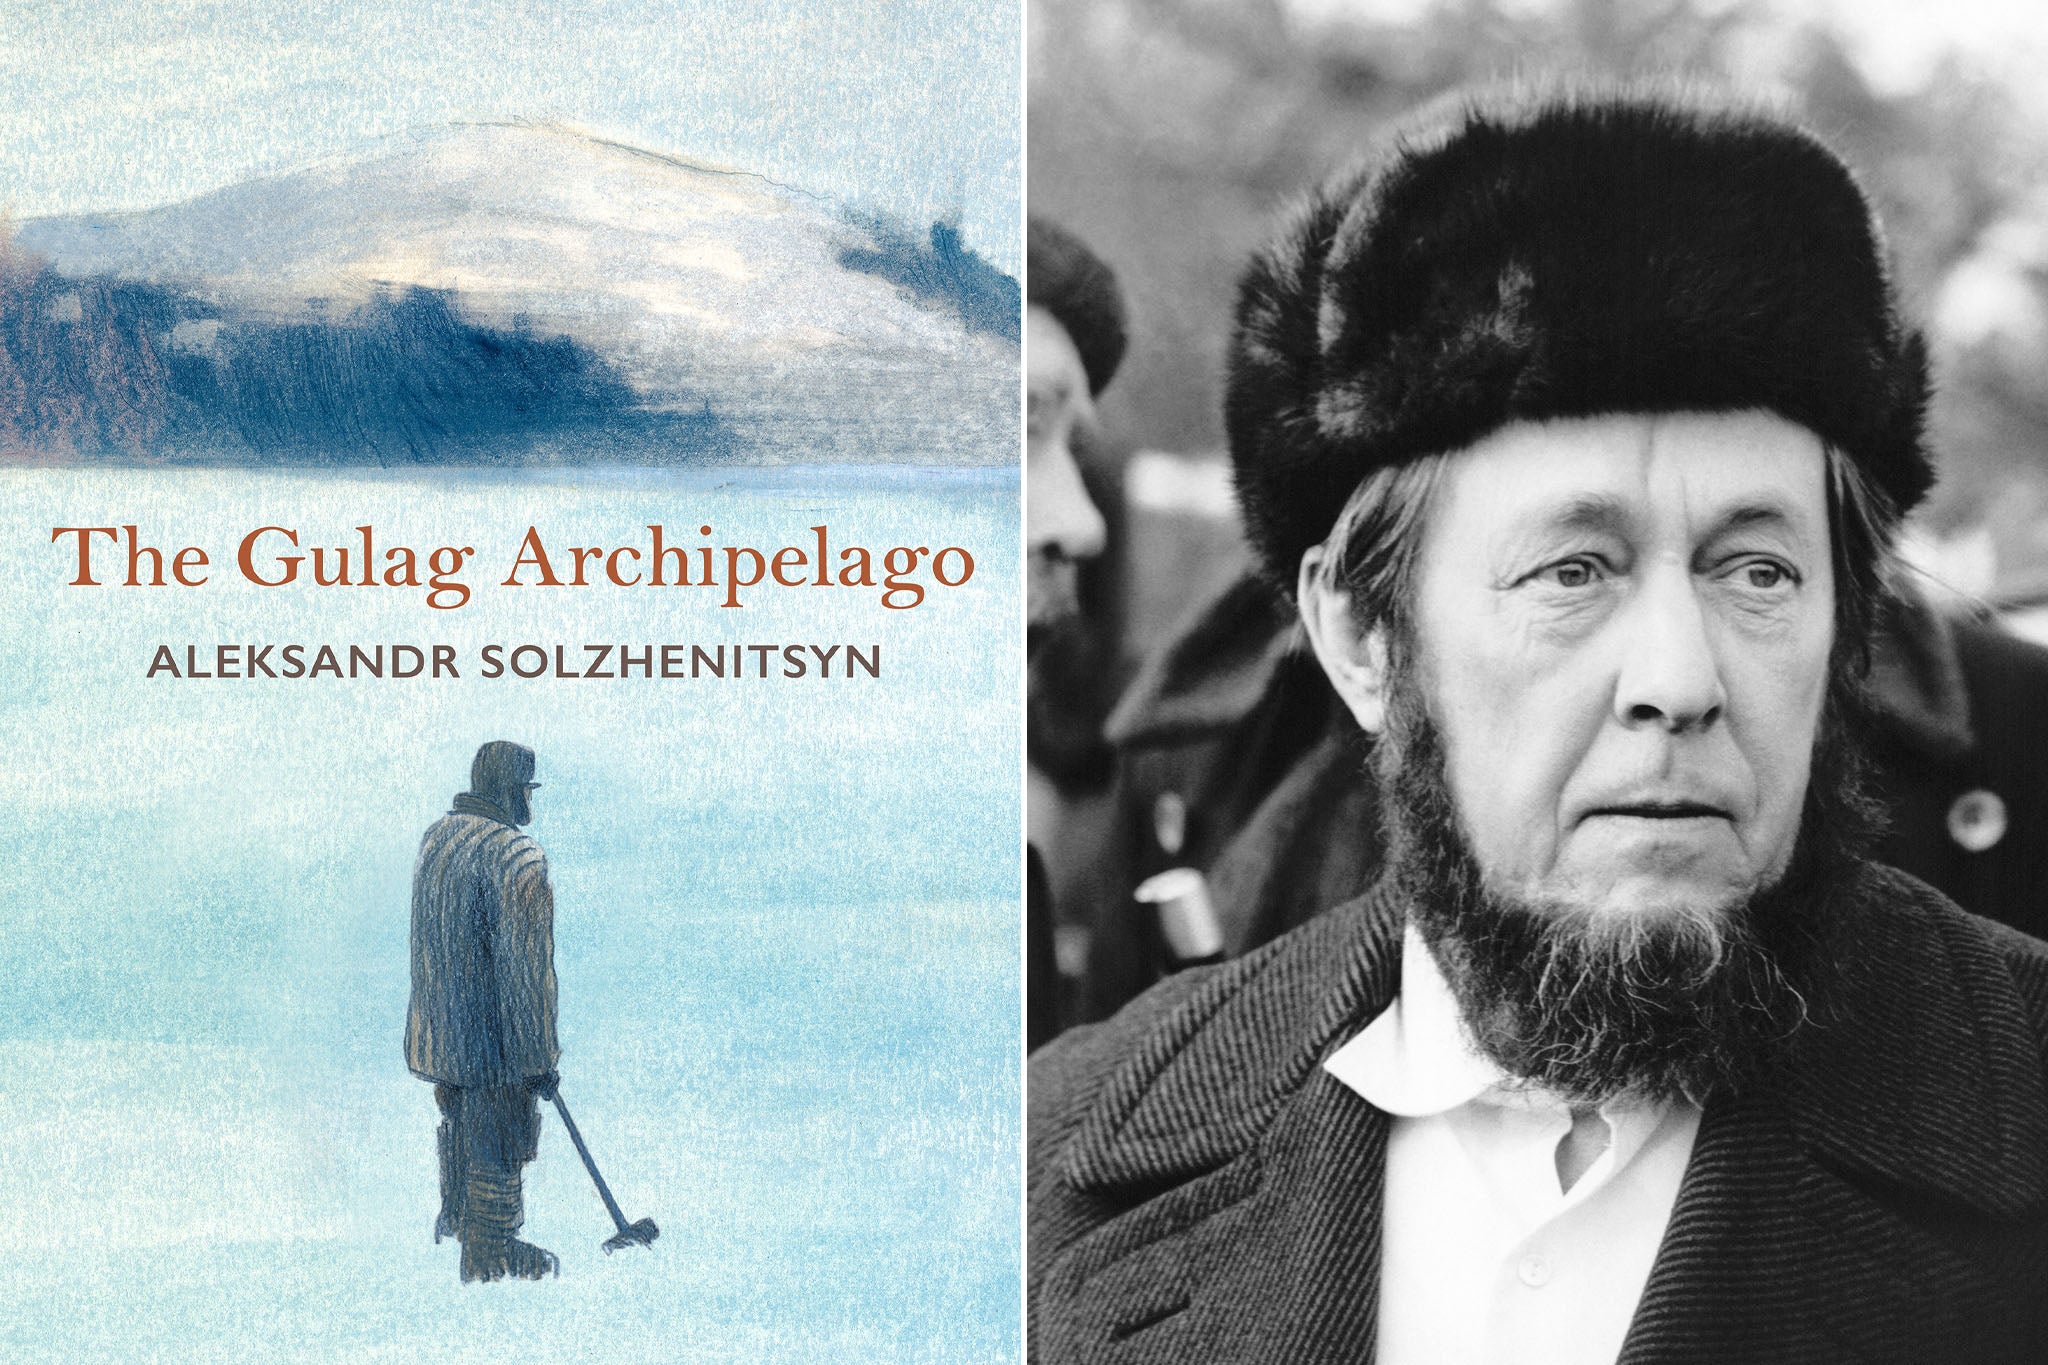 Aleksandr Solzhenitsyn’s ‘The Gulag Archipelago’ shines a light on the worst of human behaviour